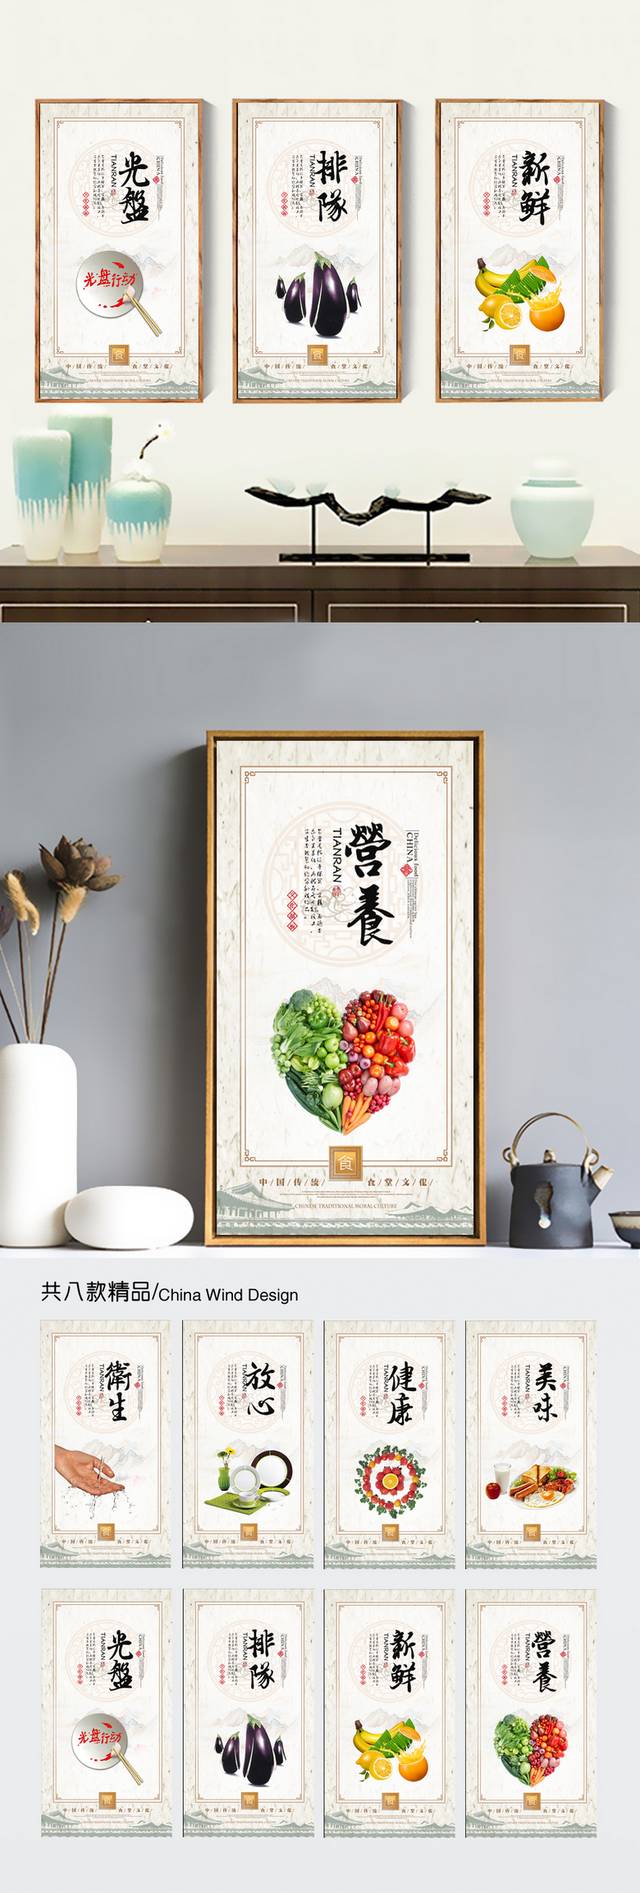 中式食堂文化展板设计